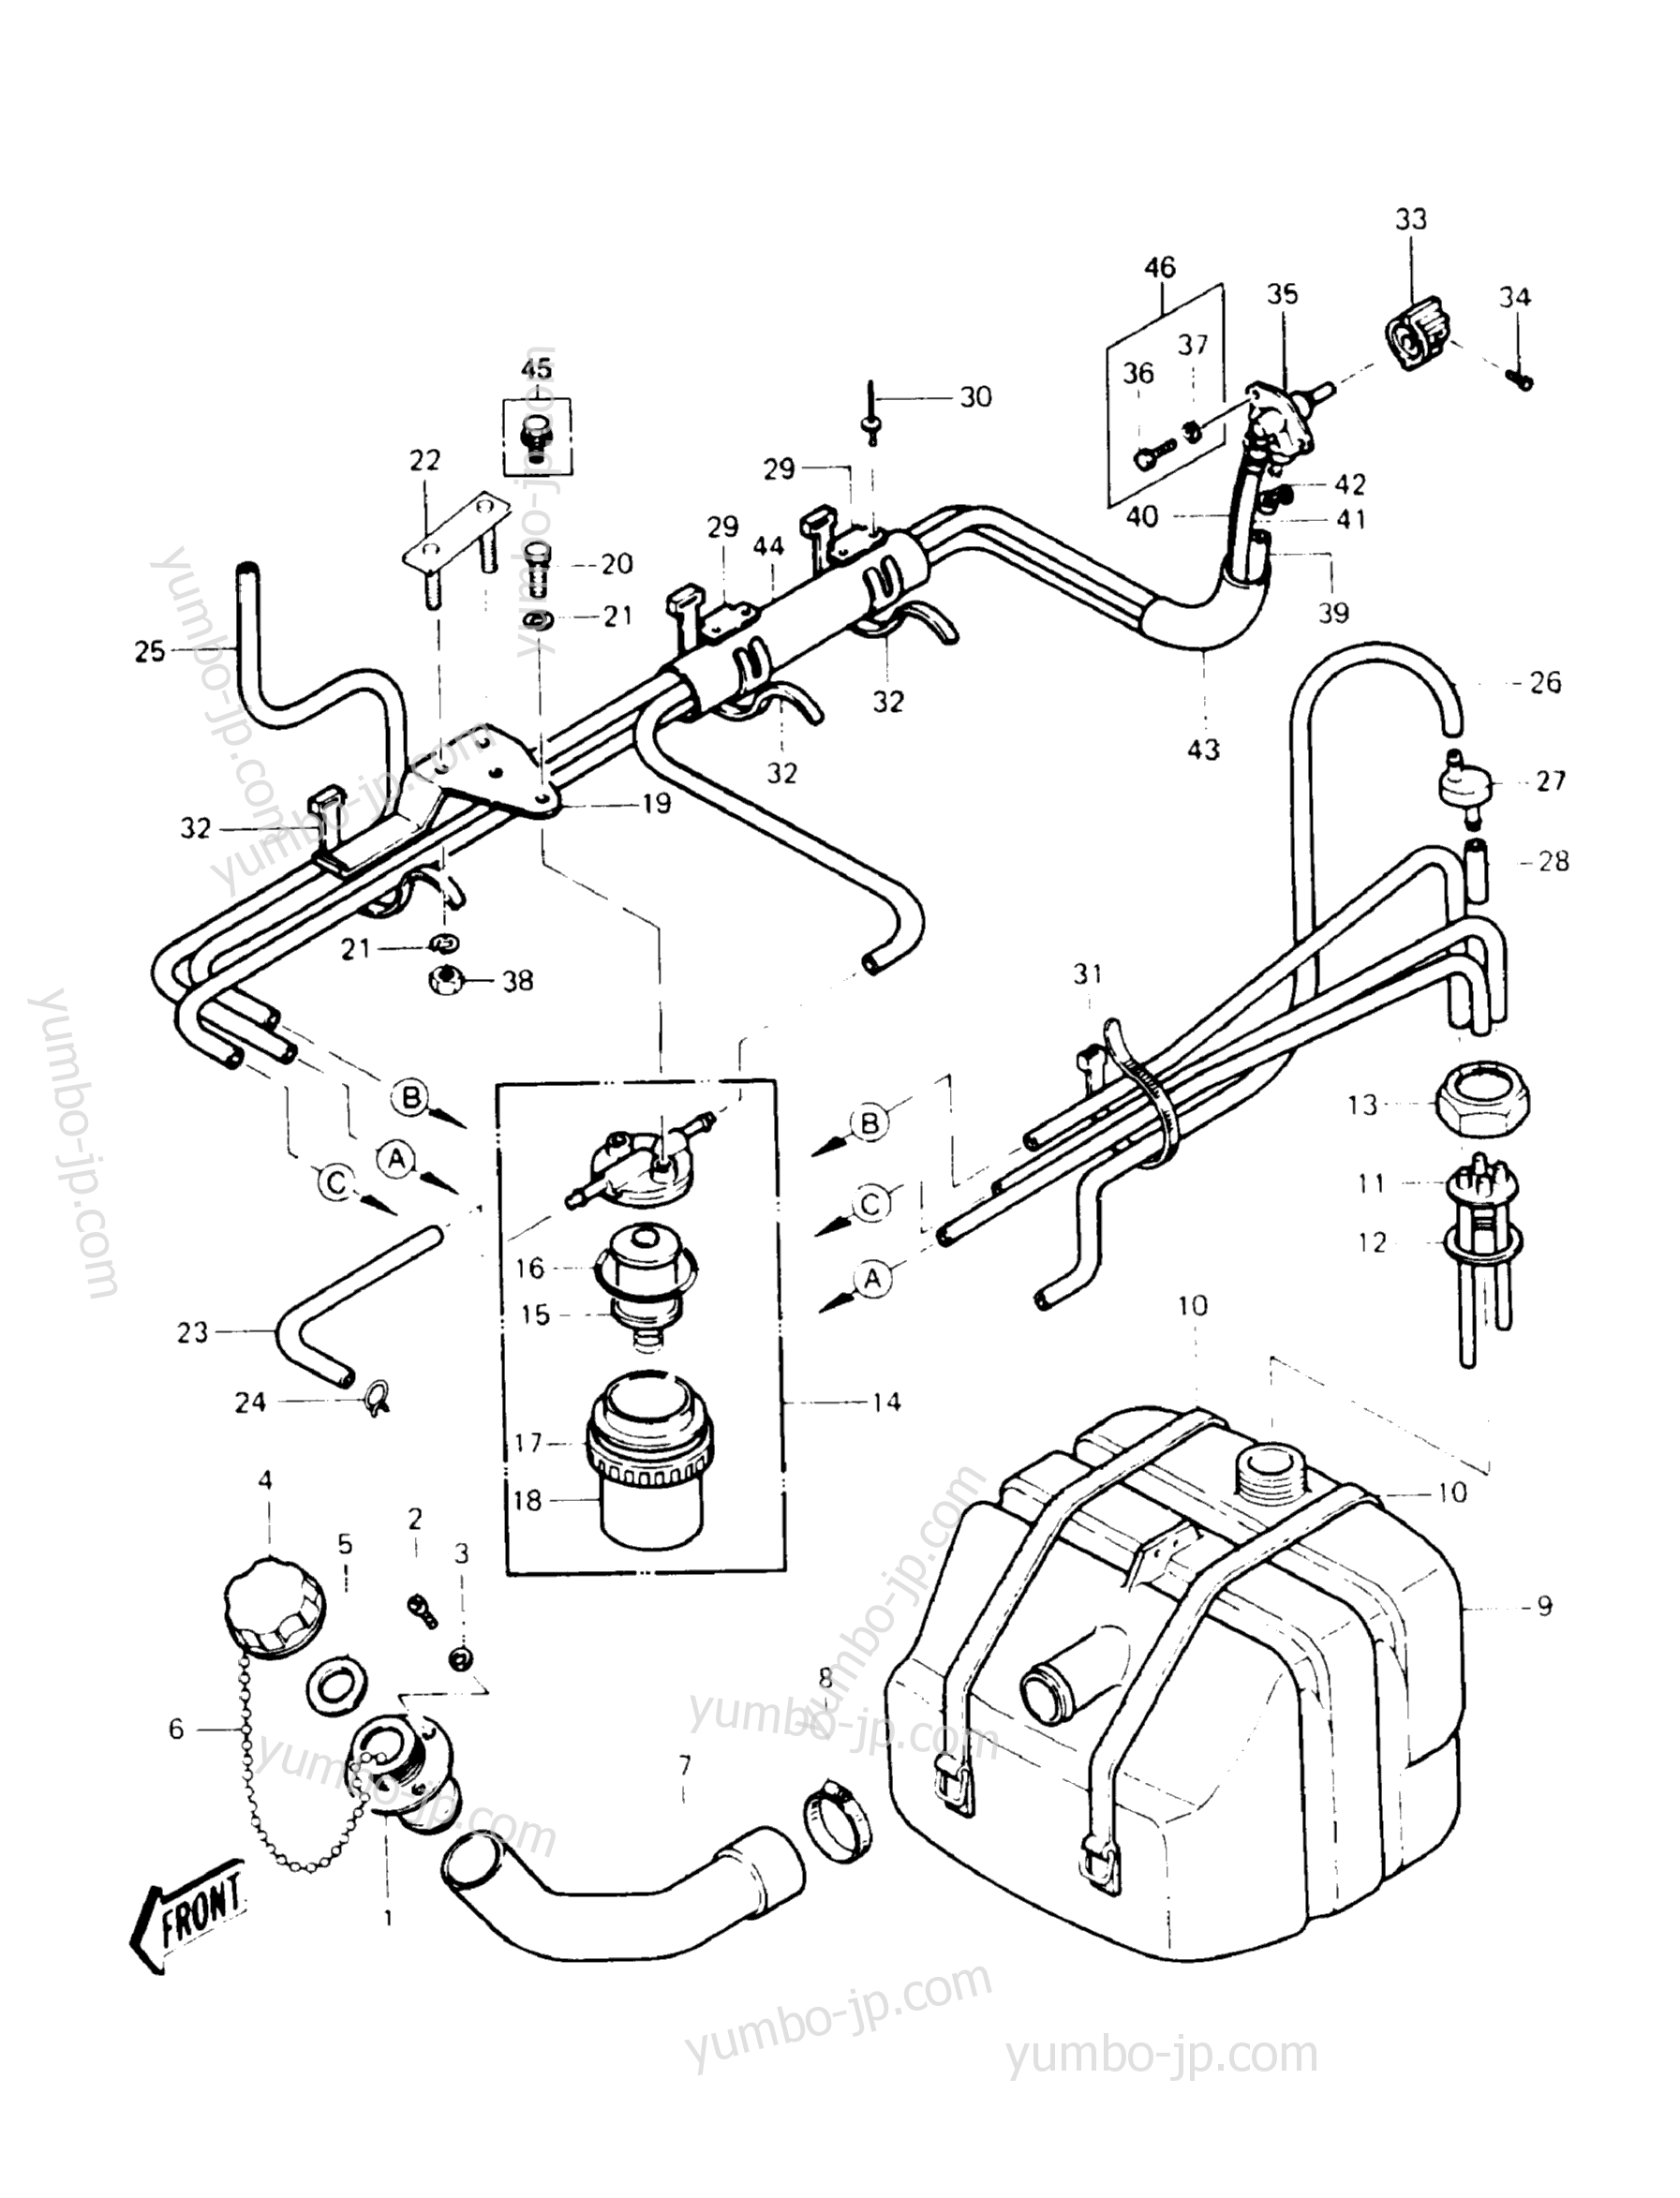 Топливный бак для гидроциклов KAWASAKI JST SKI 440 (JS440-A12) 1988 г.